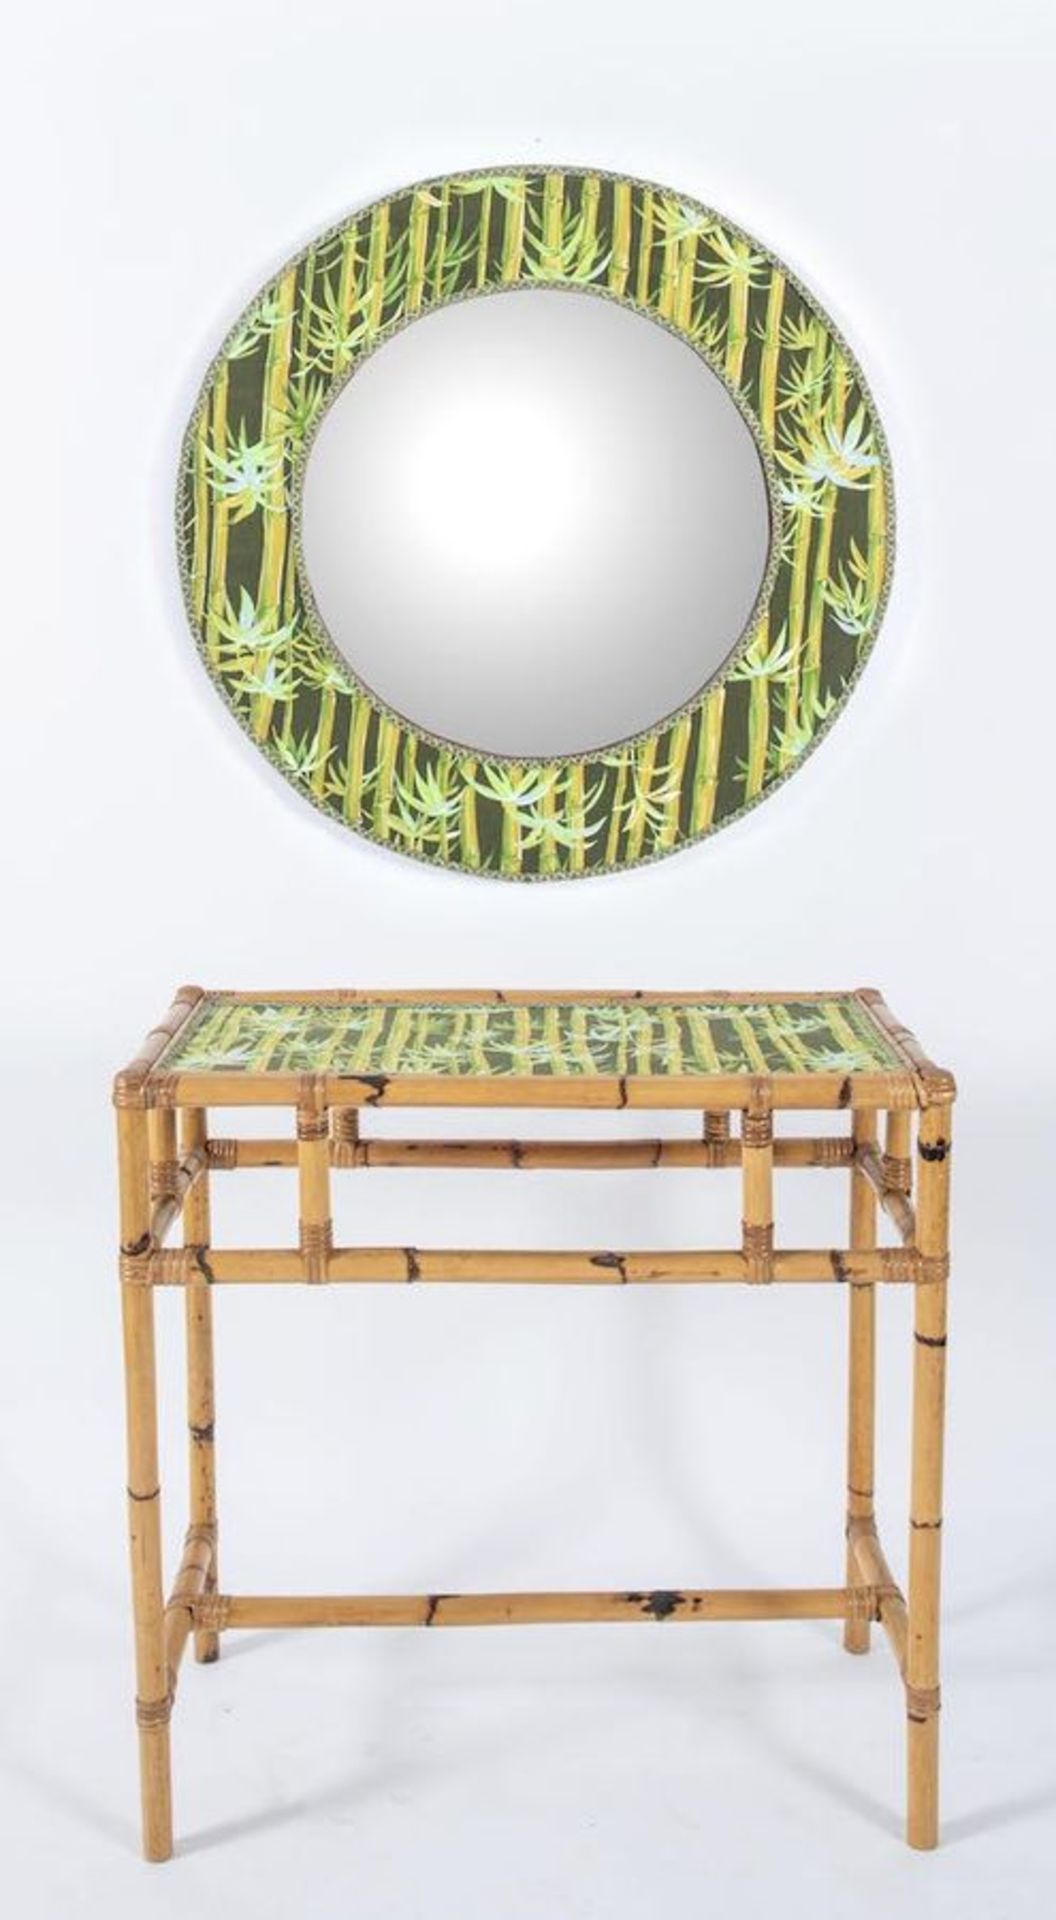 VALENTINO PIU’ Consolle in bamboo con legature in cuoio e tessuto con specchio in vetro e cornice in